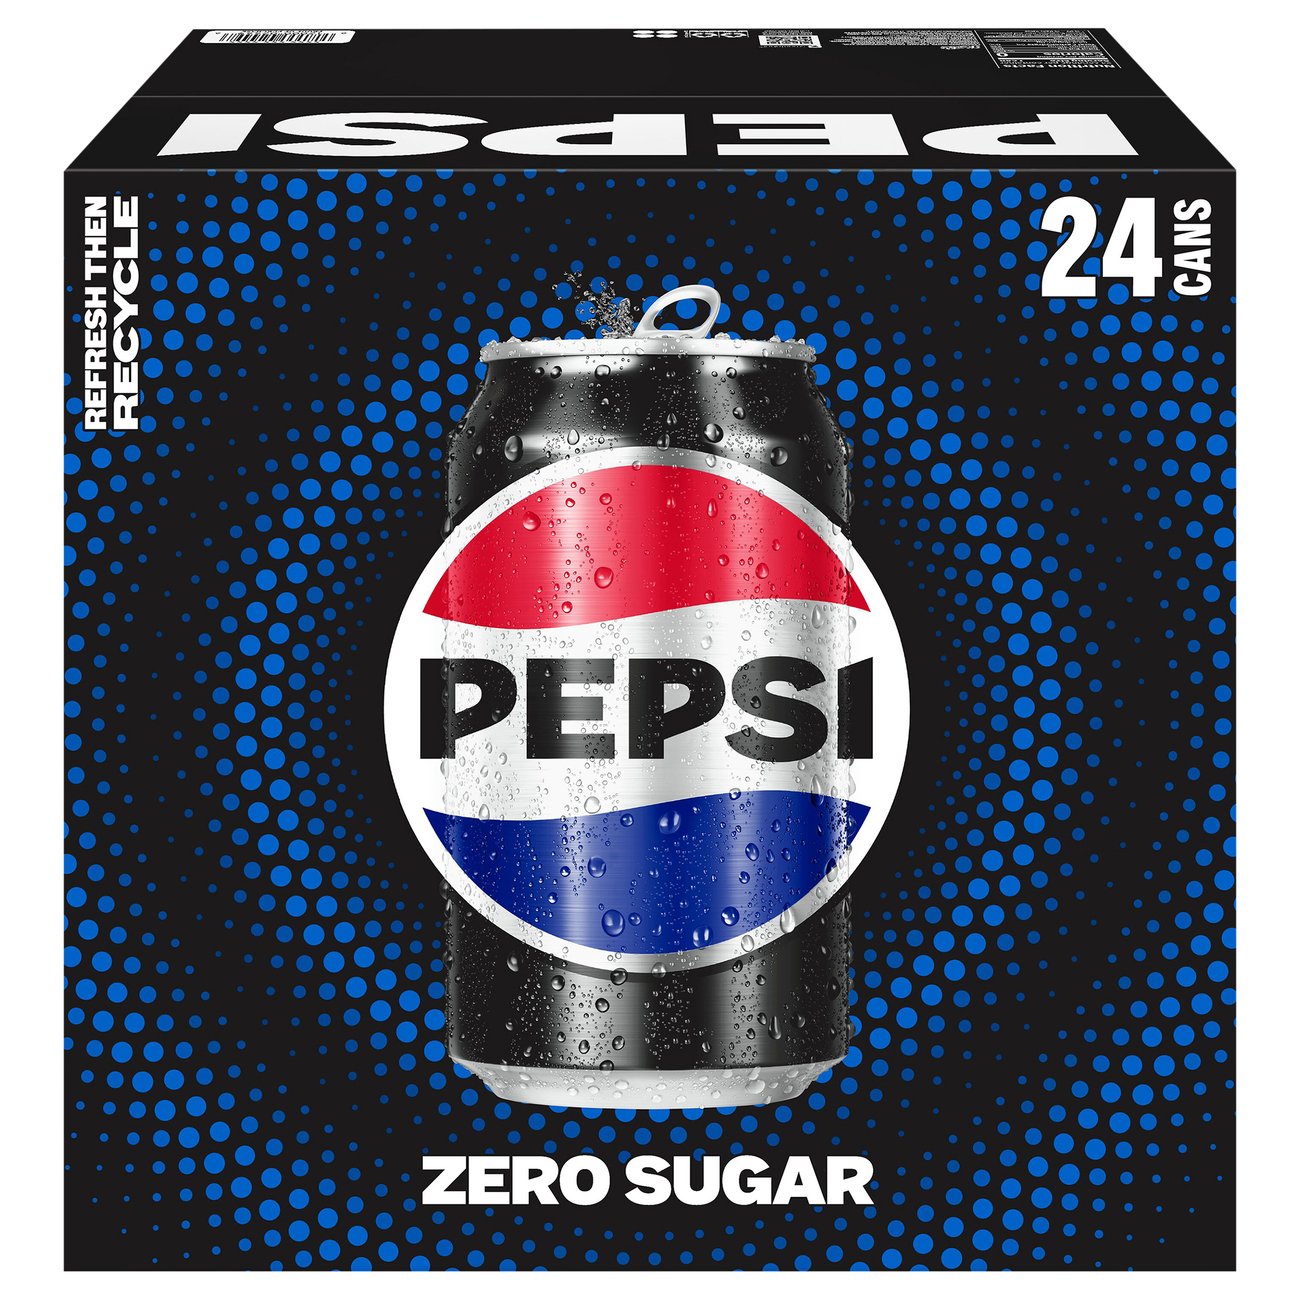 Pepsi Zero Sugar Cola 24 pk Cans Shop Soda at HEB